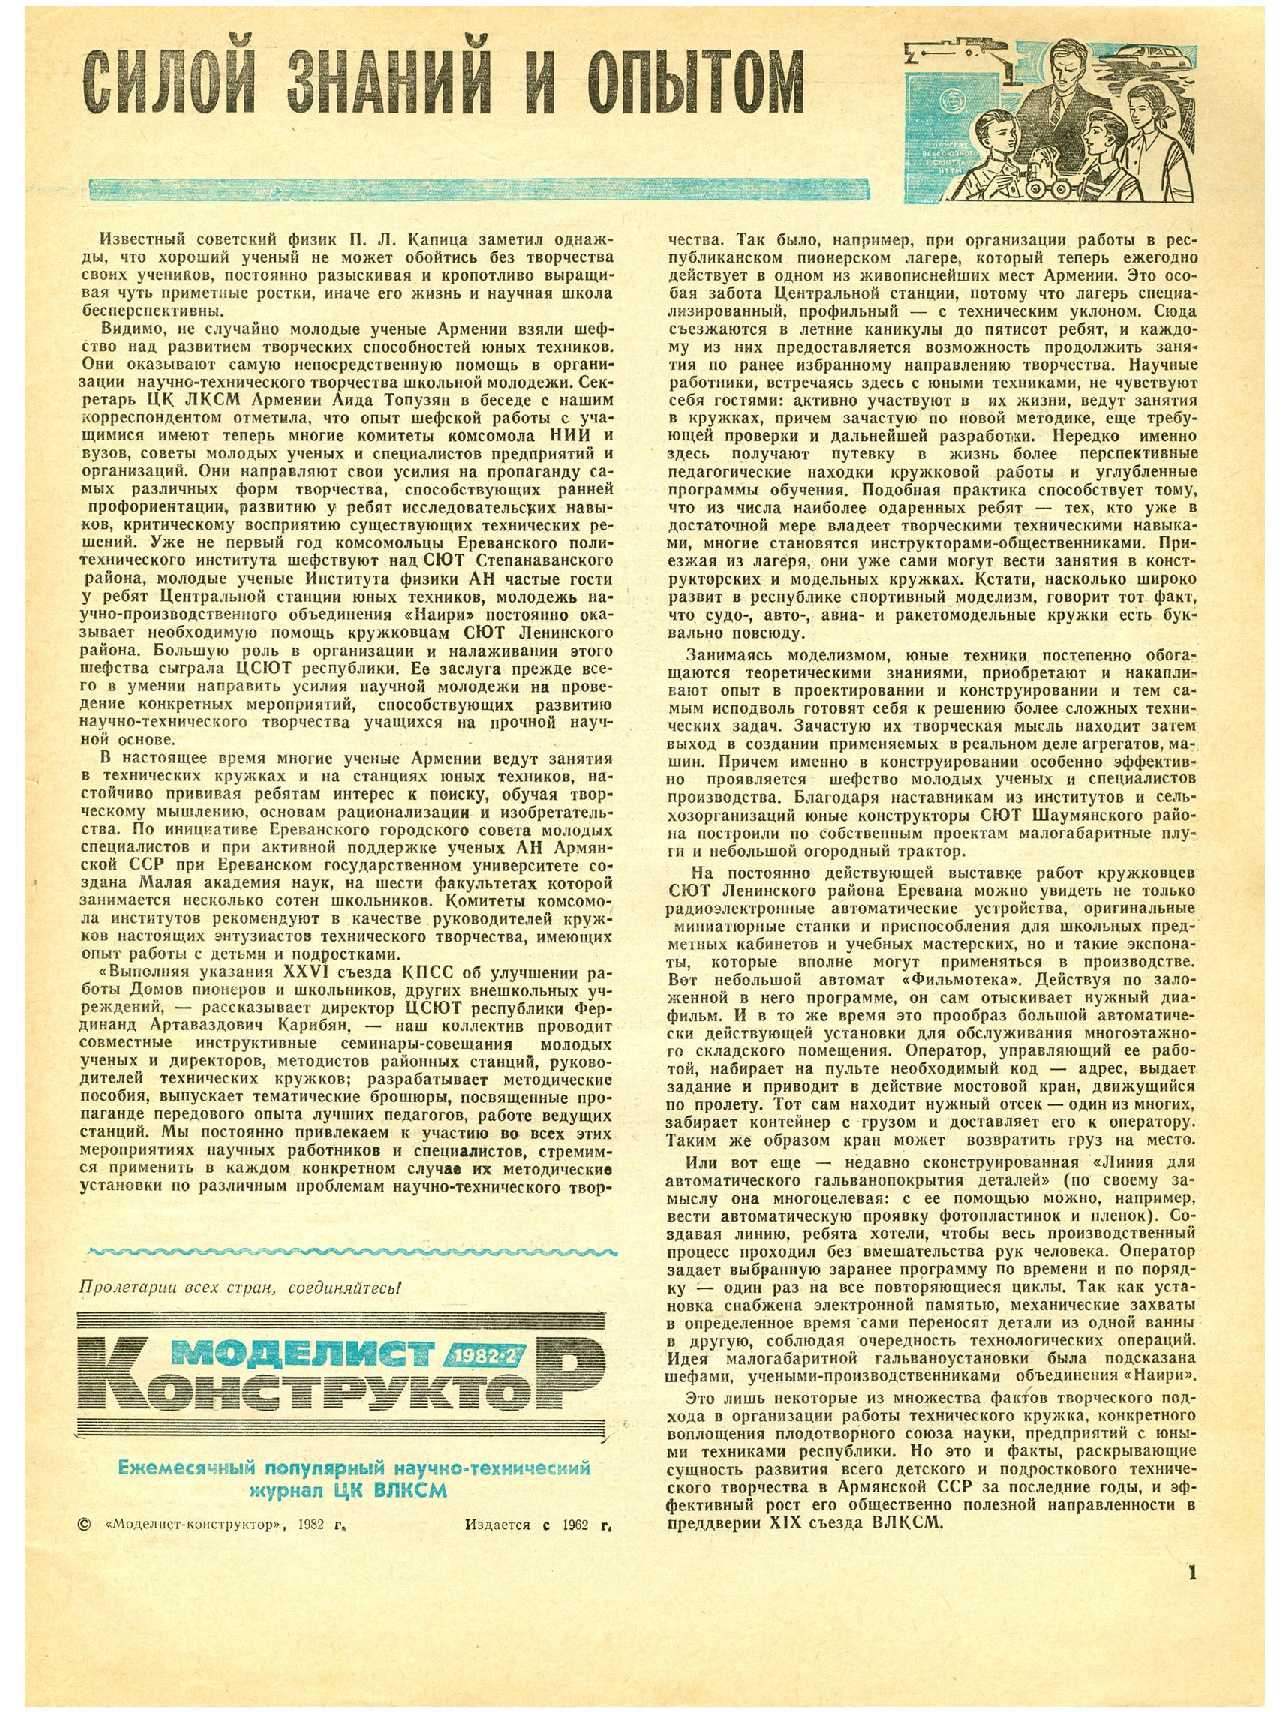 МК 2, 1982, 1 c.